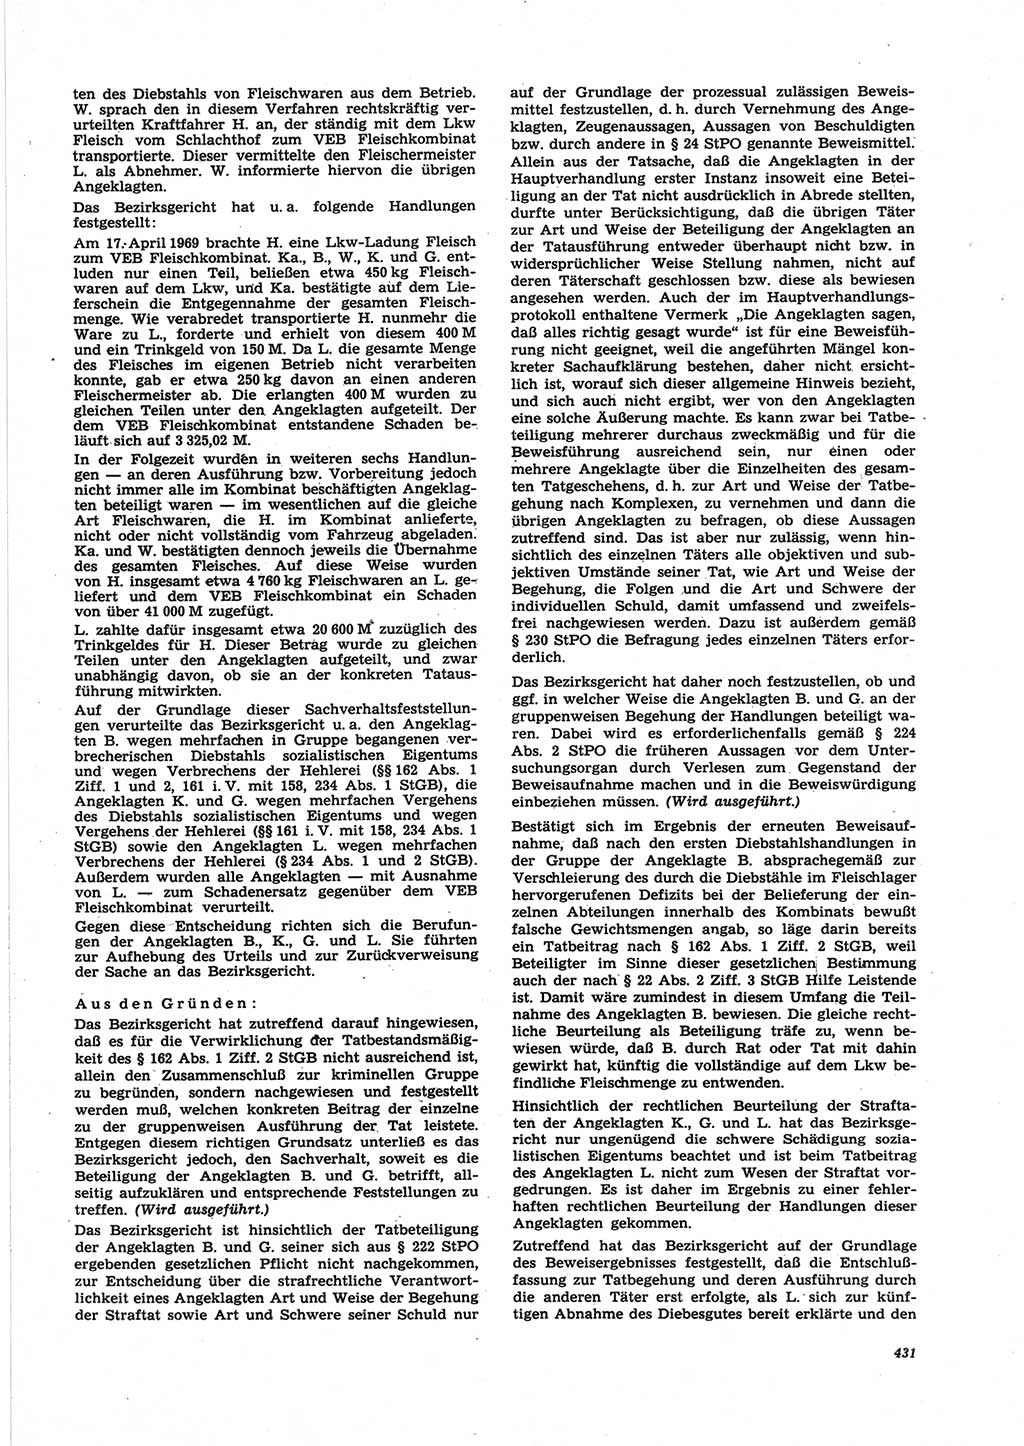 Neue Justiz (NJ), Zeitschrift für Recht und Rechtswissenschaft [Deutsche Demokratische Republik (DDR)], 25. Jahrgang 1971, Seite 431 (NJ DDR 1971, S. 431)